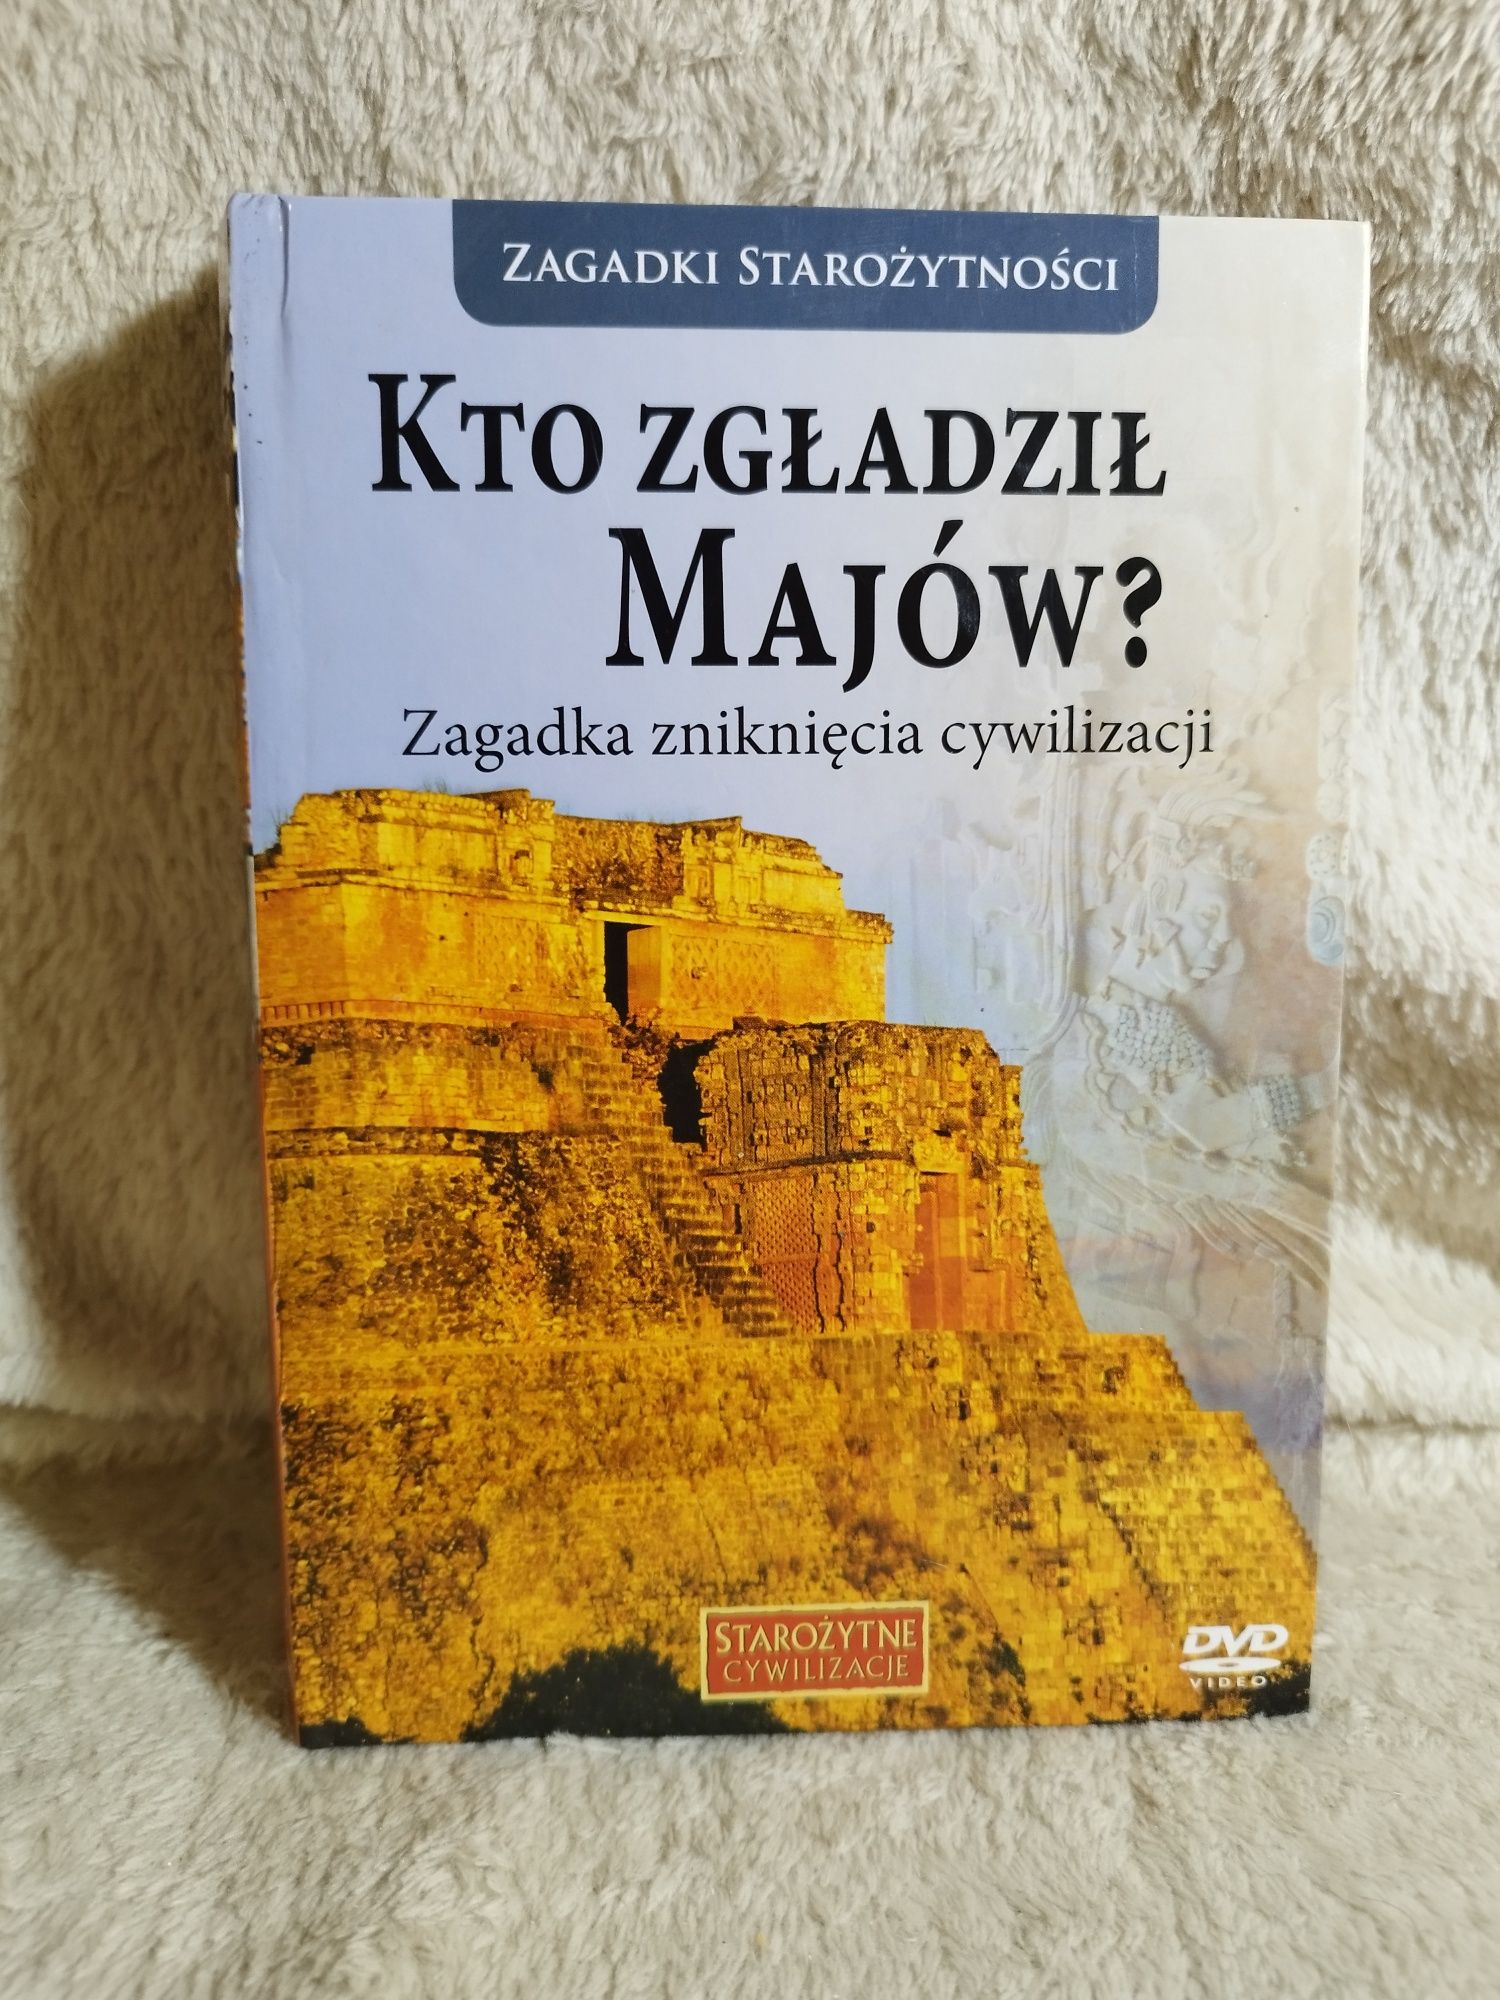 Płyta DVD / Książka - seria "Starożytne Cywilizacje" - 3 szt